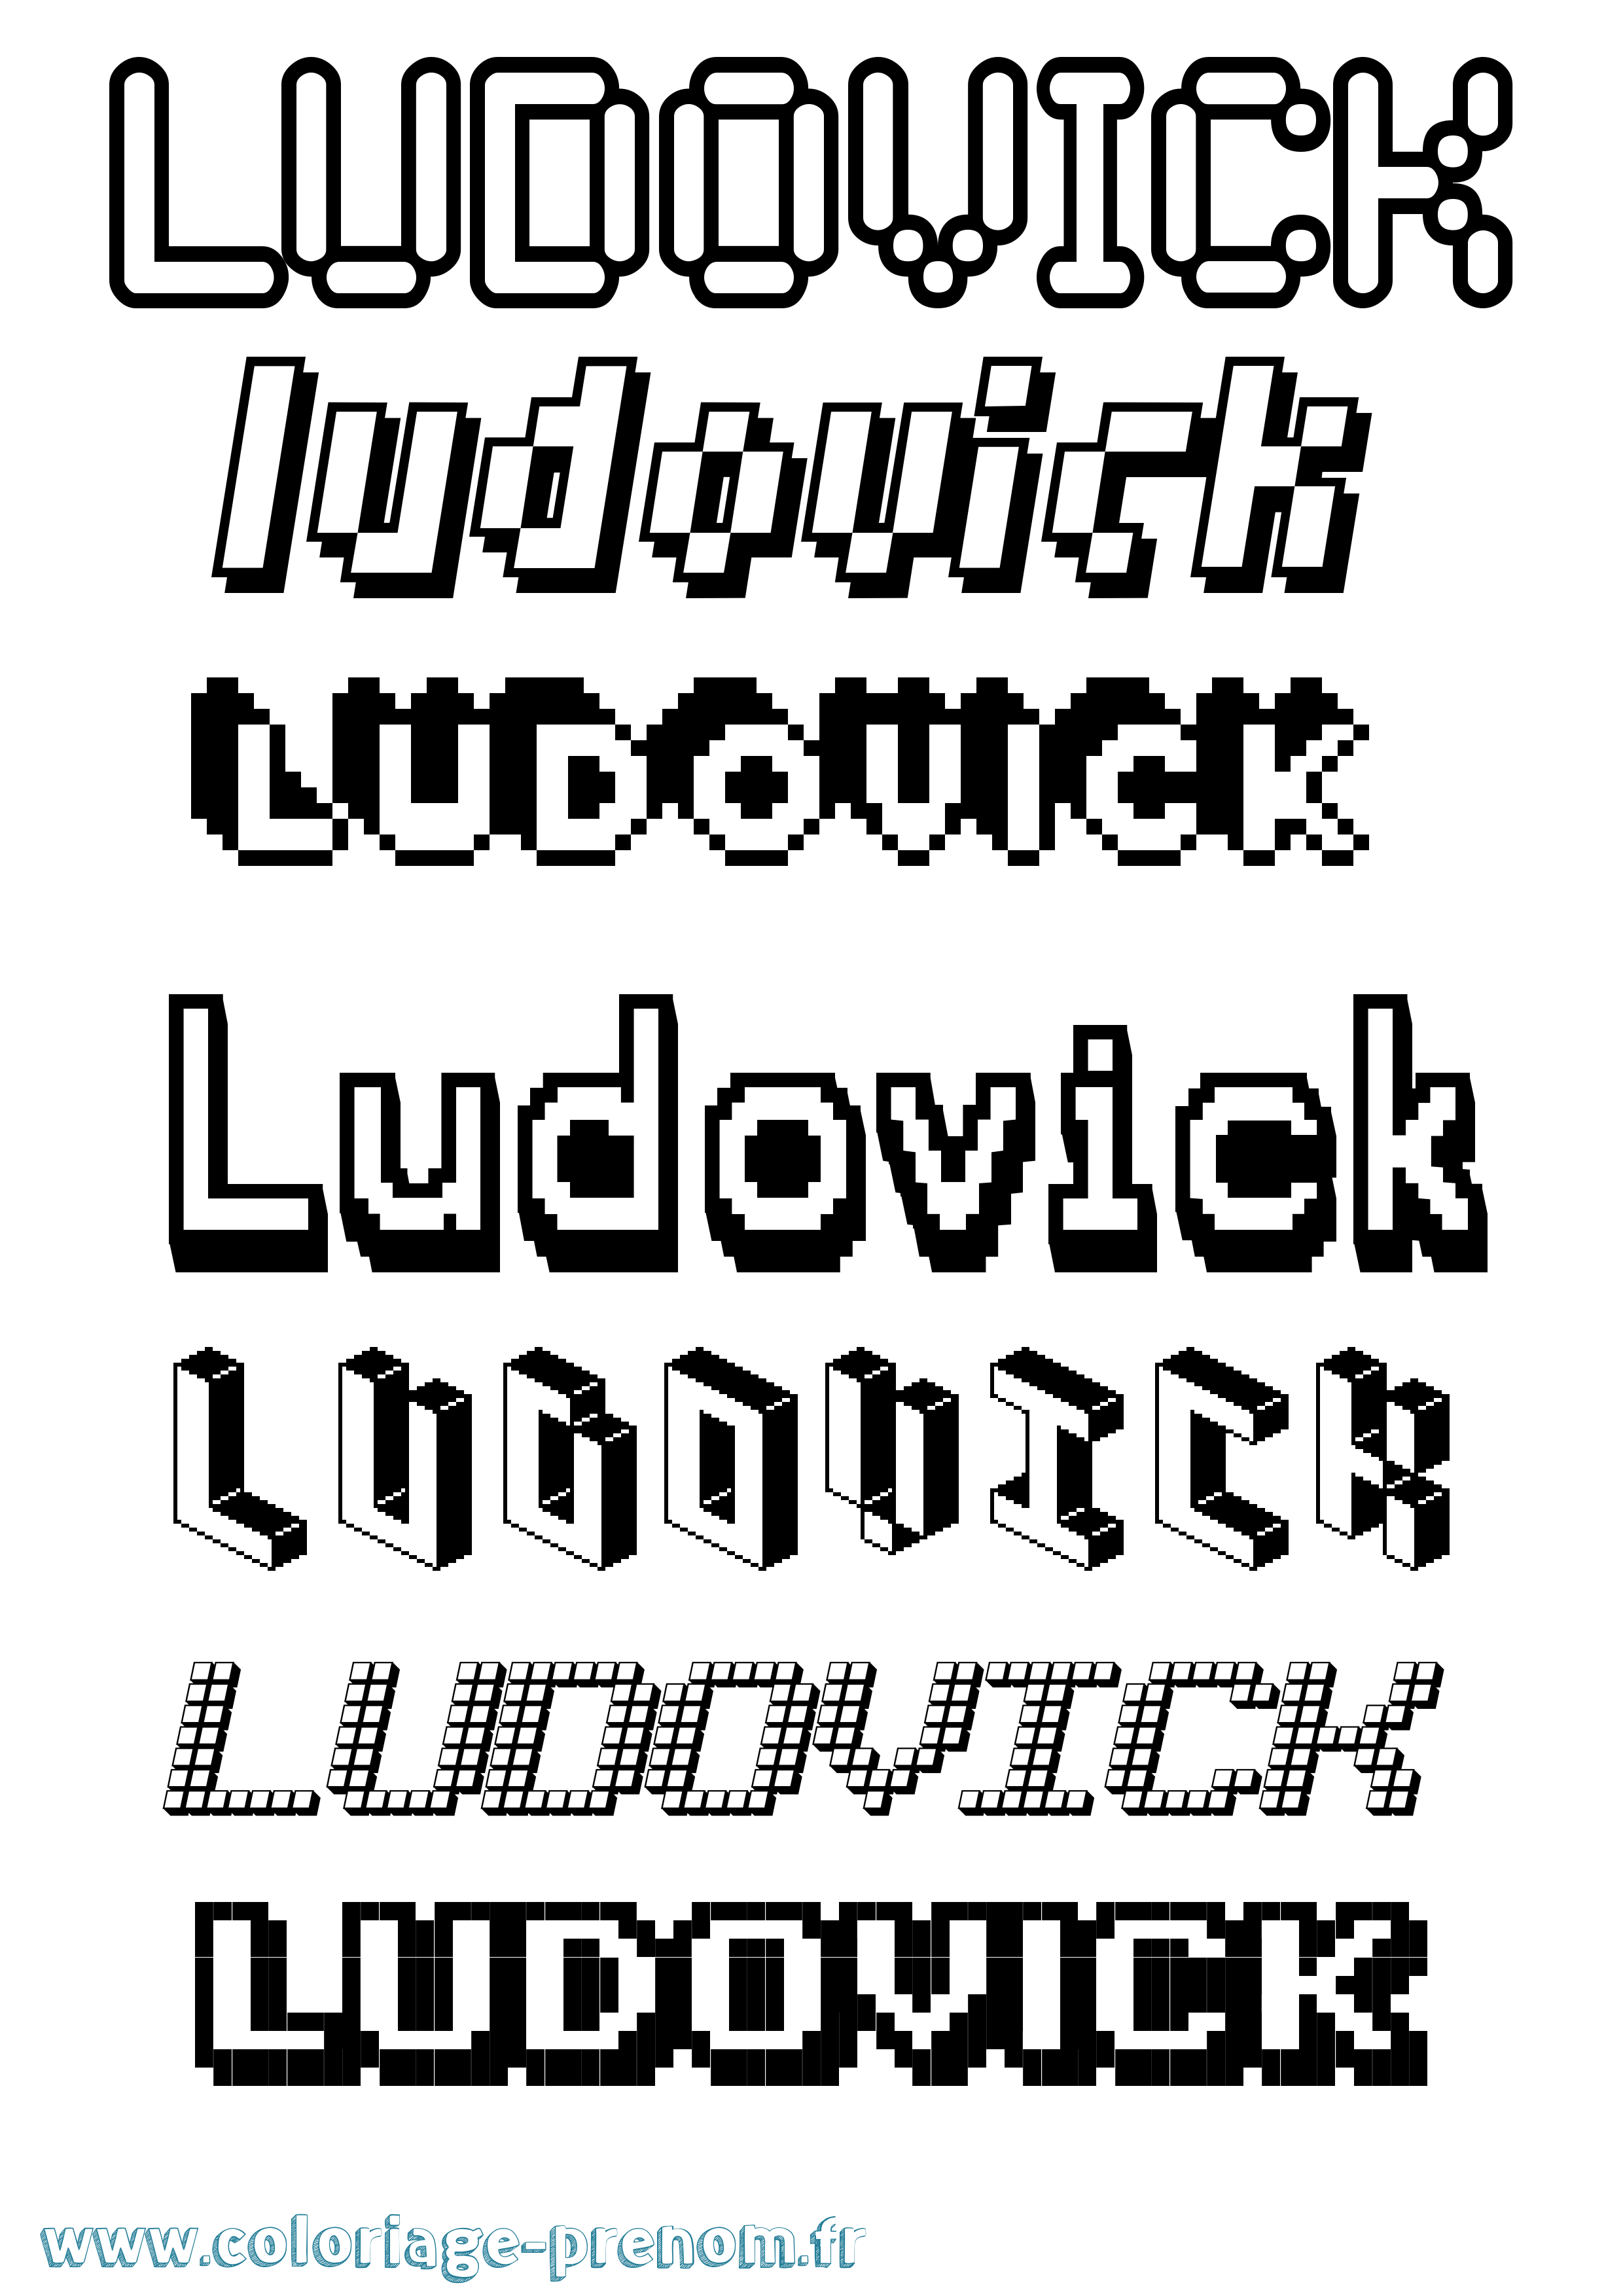 Coloriage prénom Ludovick Pixel